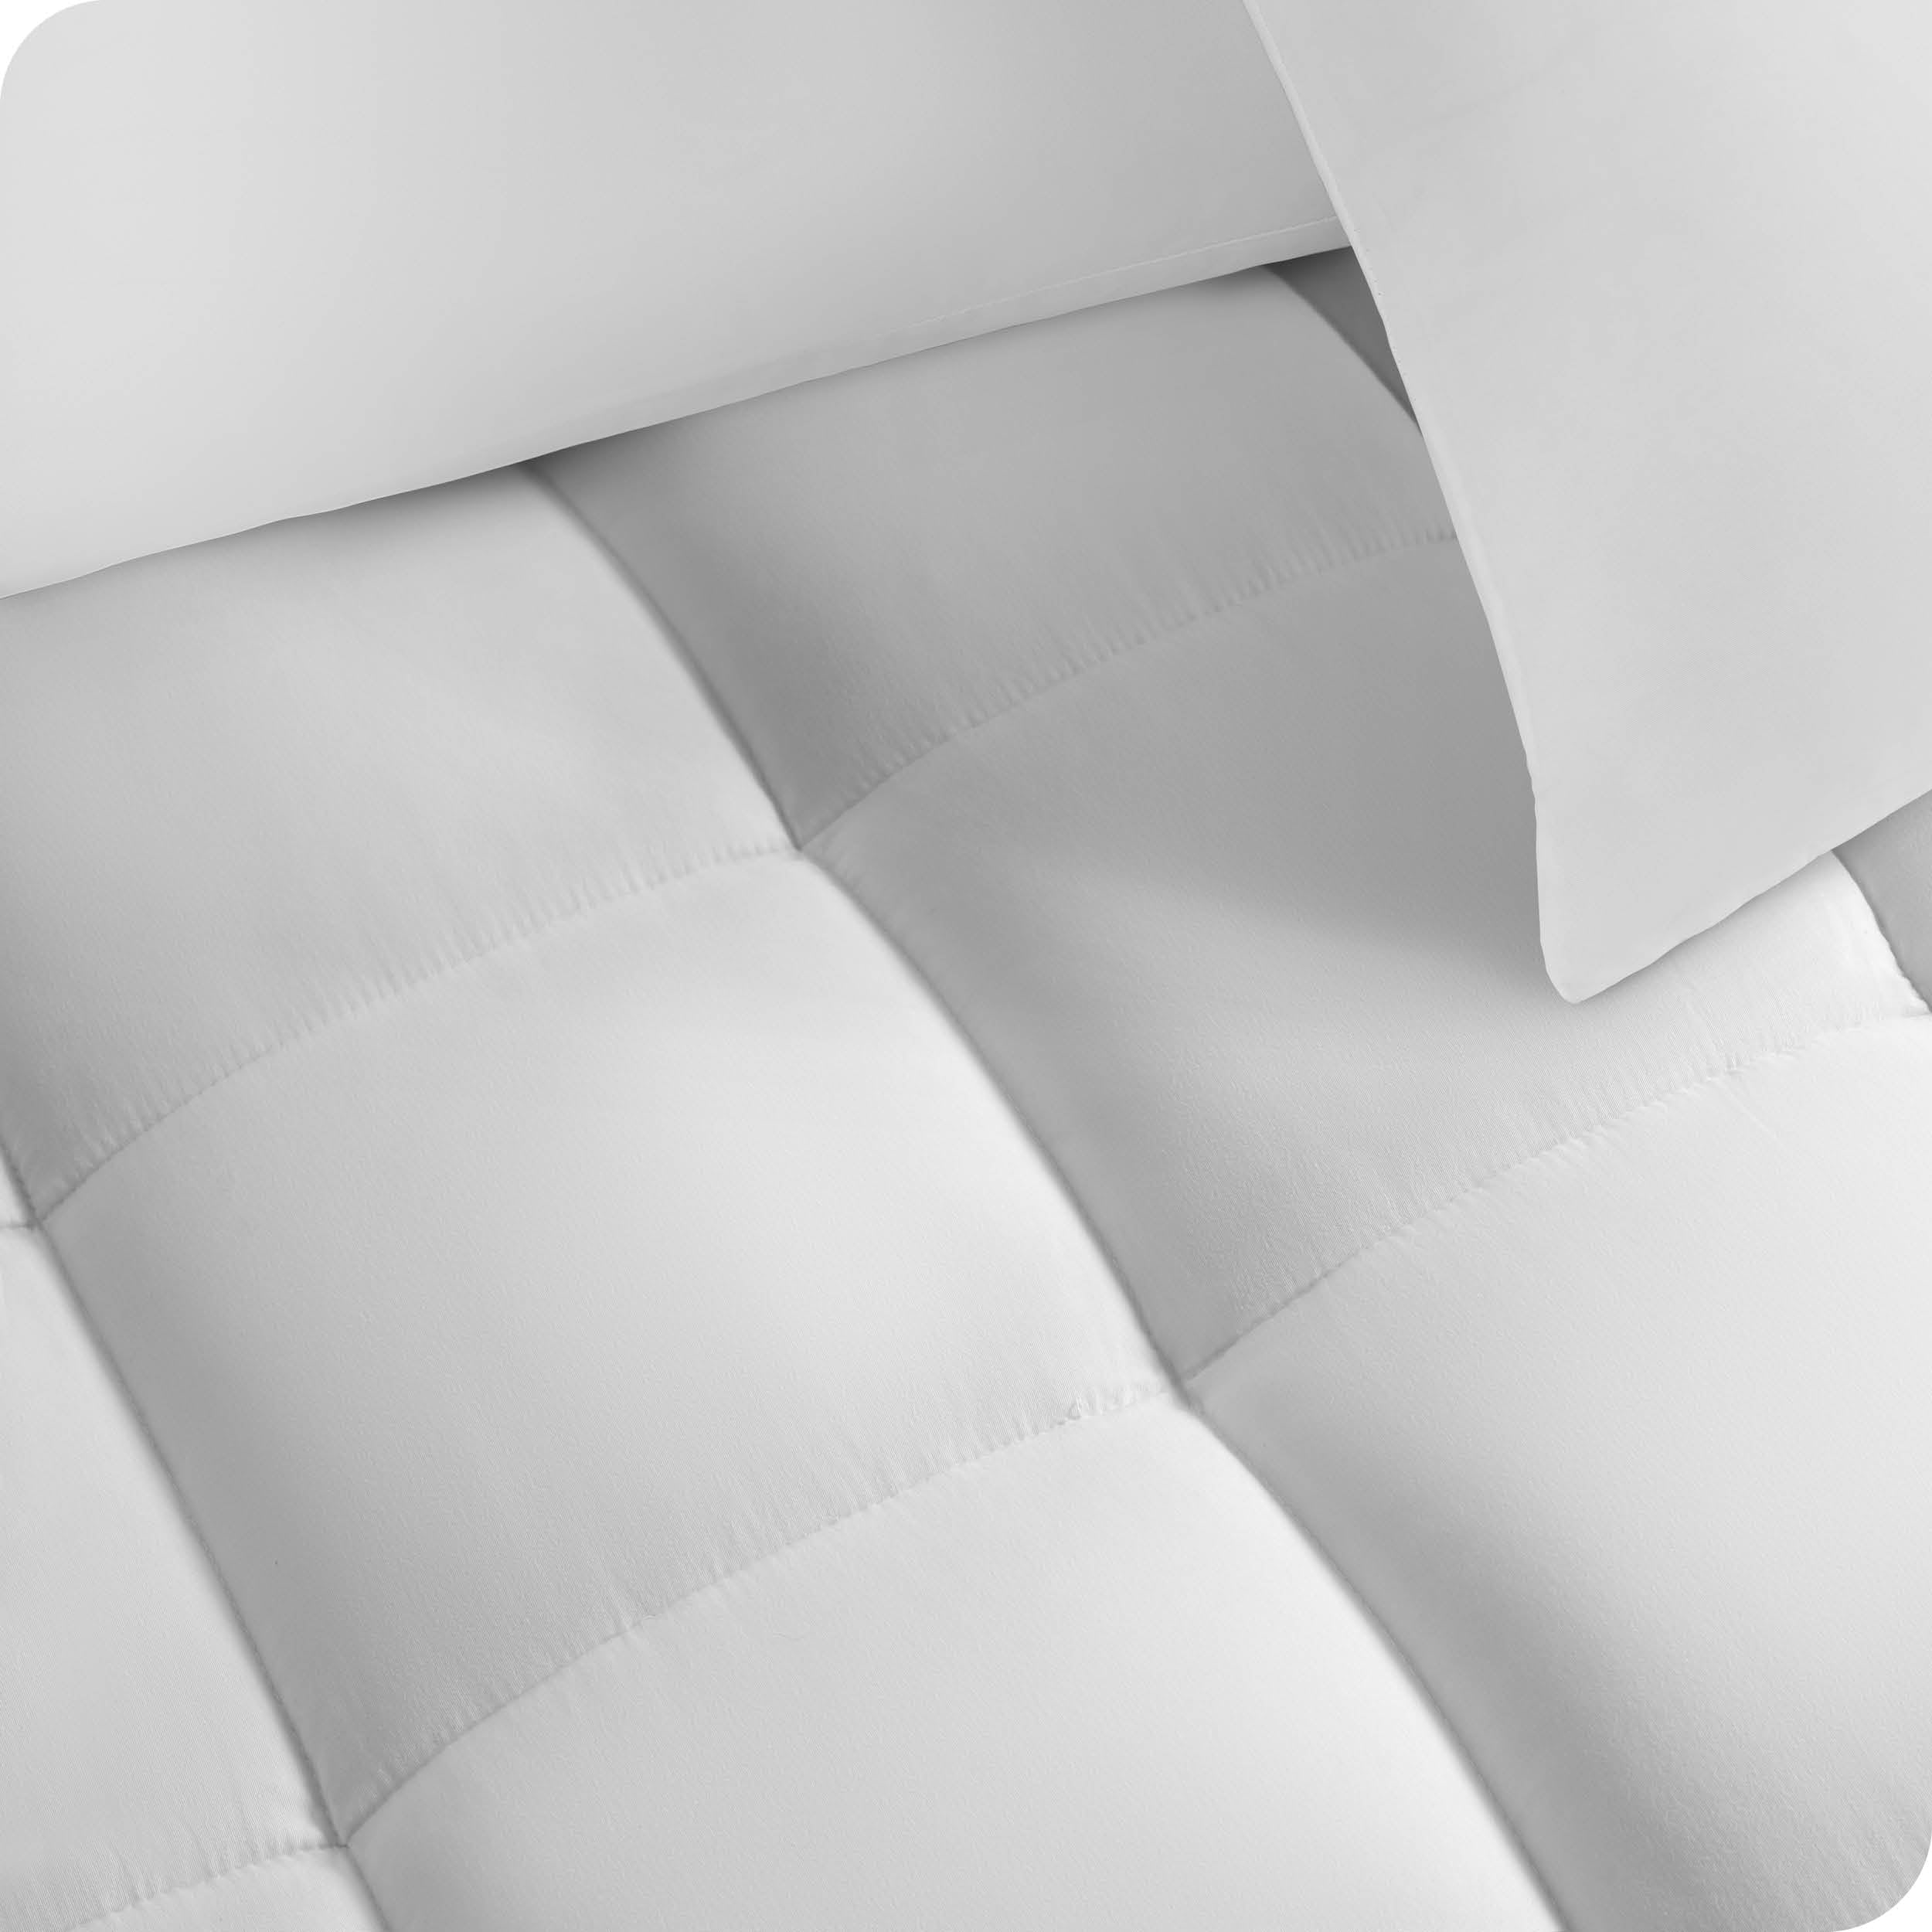 Close up of a cotton mattress pad showing the box-stitching.